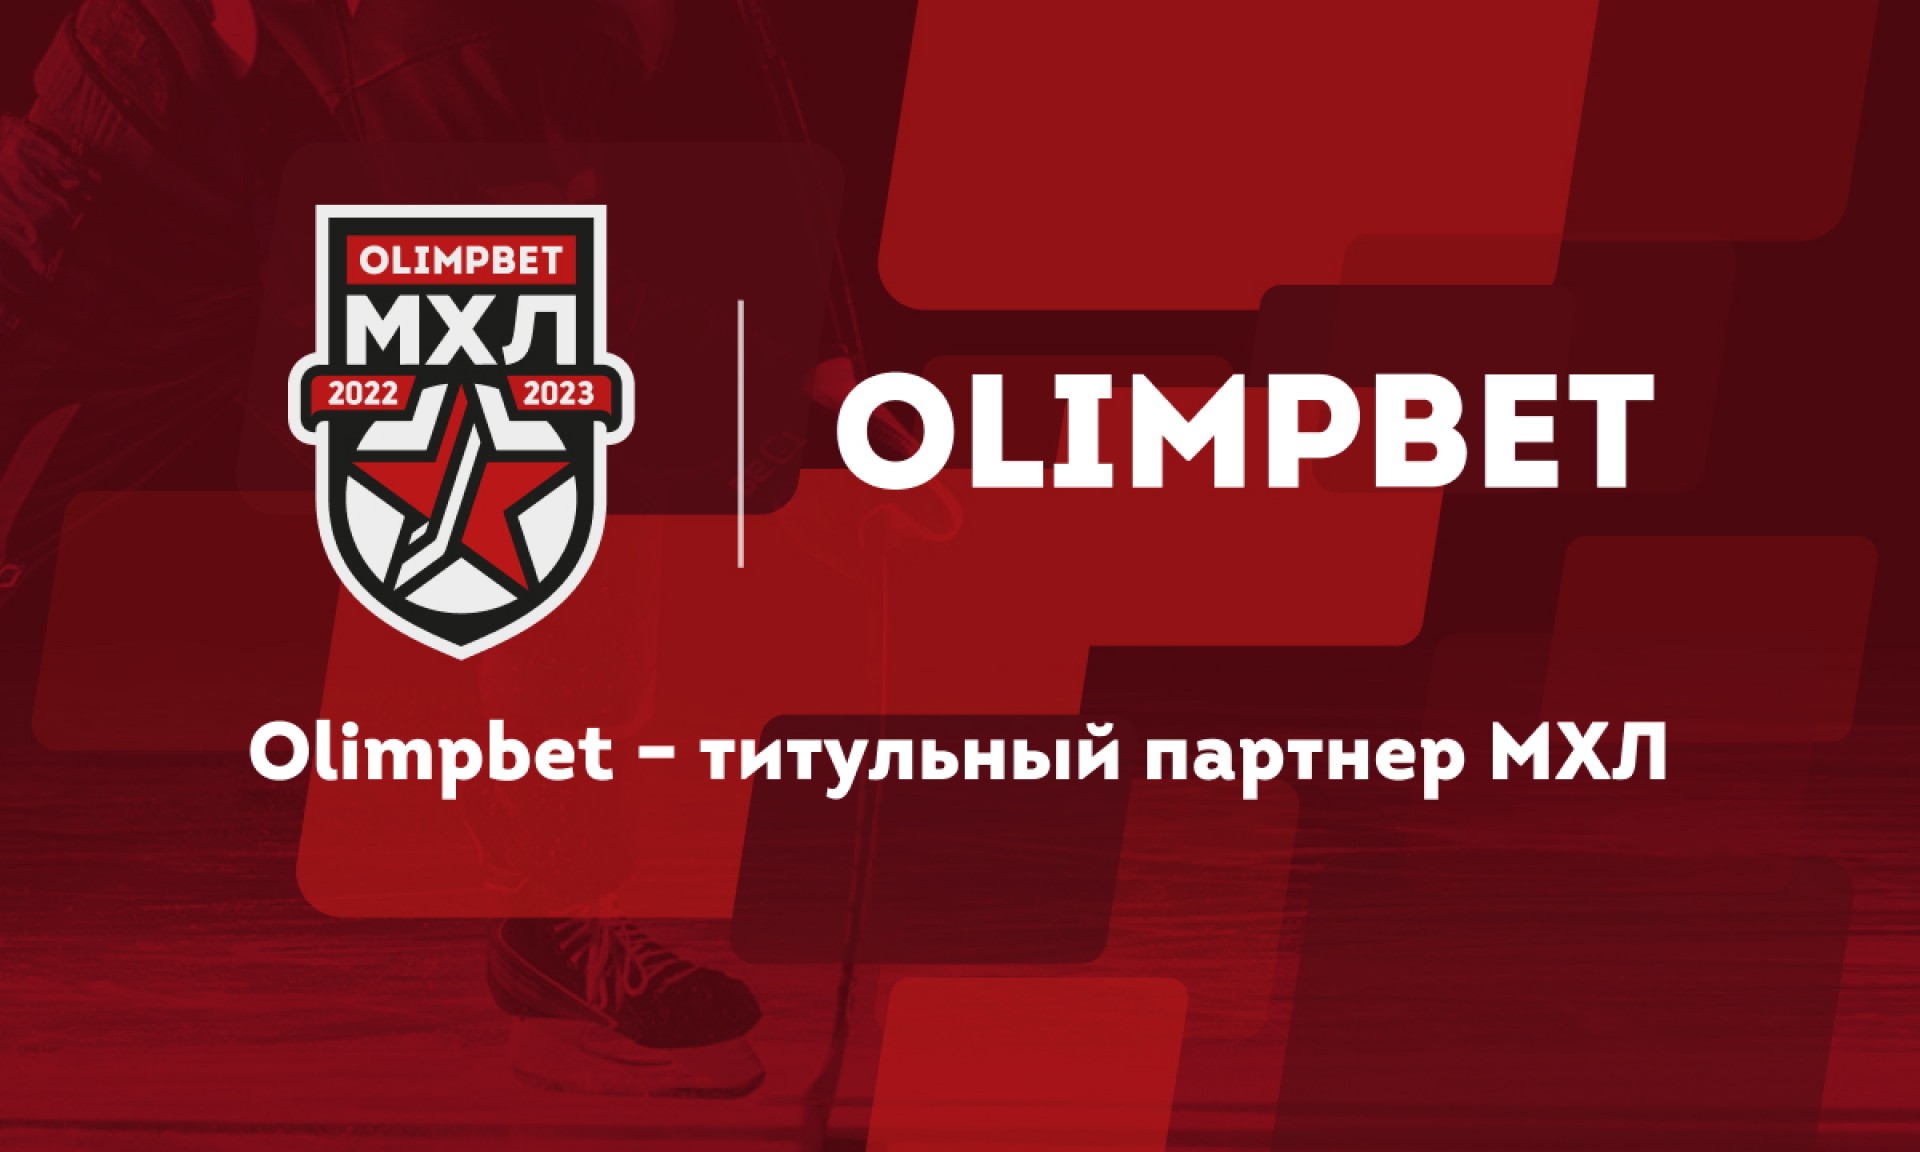 Букмекерская компания OLIMPBET стала титульным партнёром МХЛ